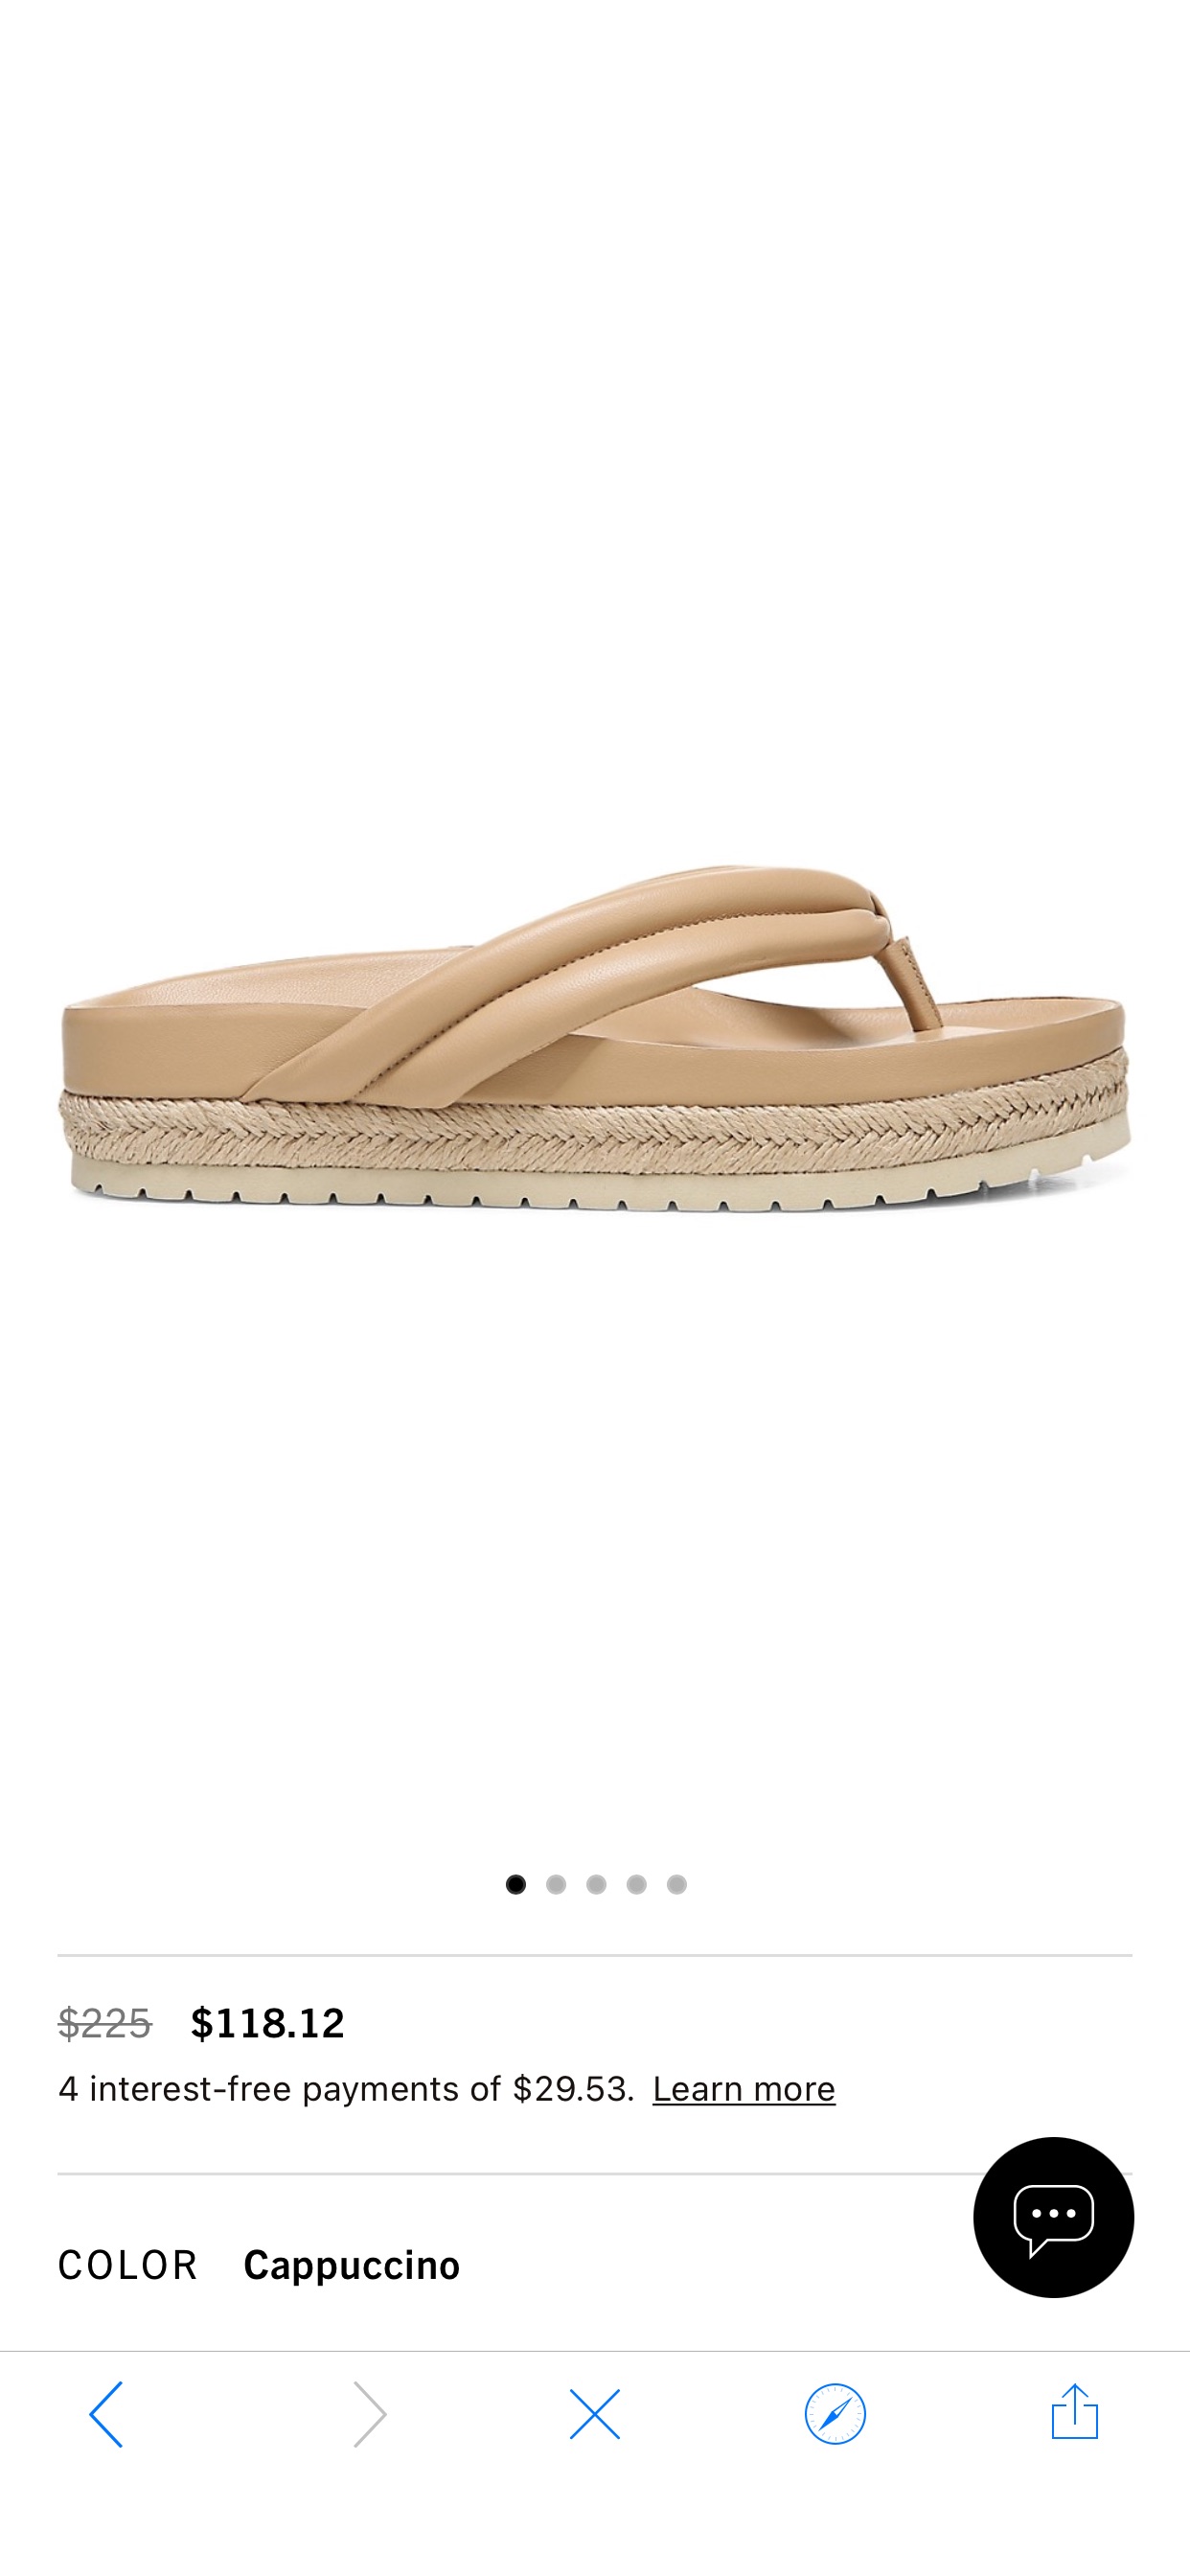 Shop Vince Forest Leather Thong Espadrille Platform Sandals | Saks Fifth Avenue
鞋子